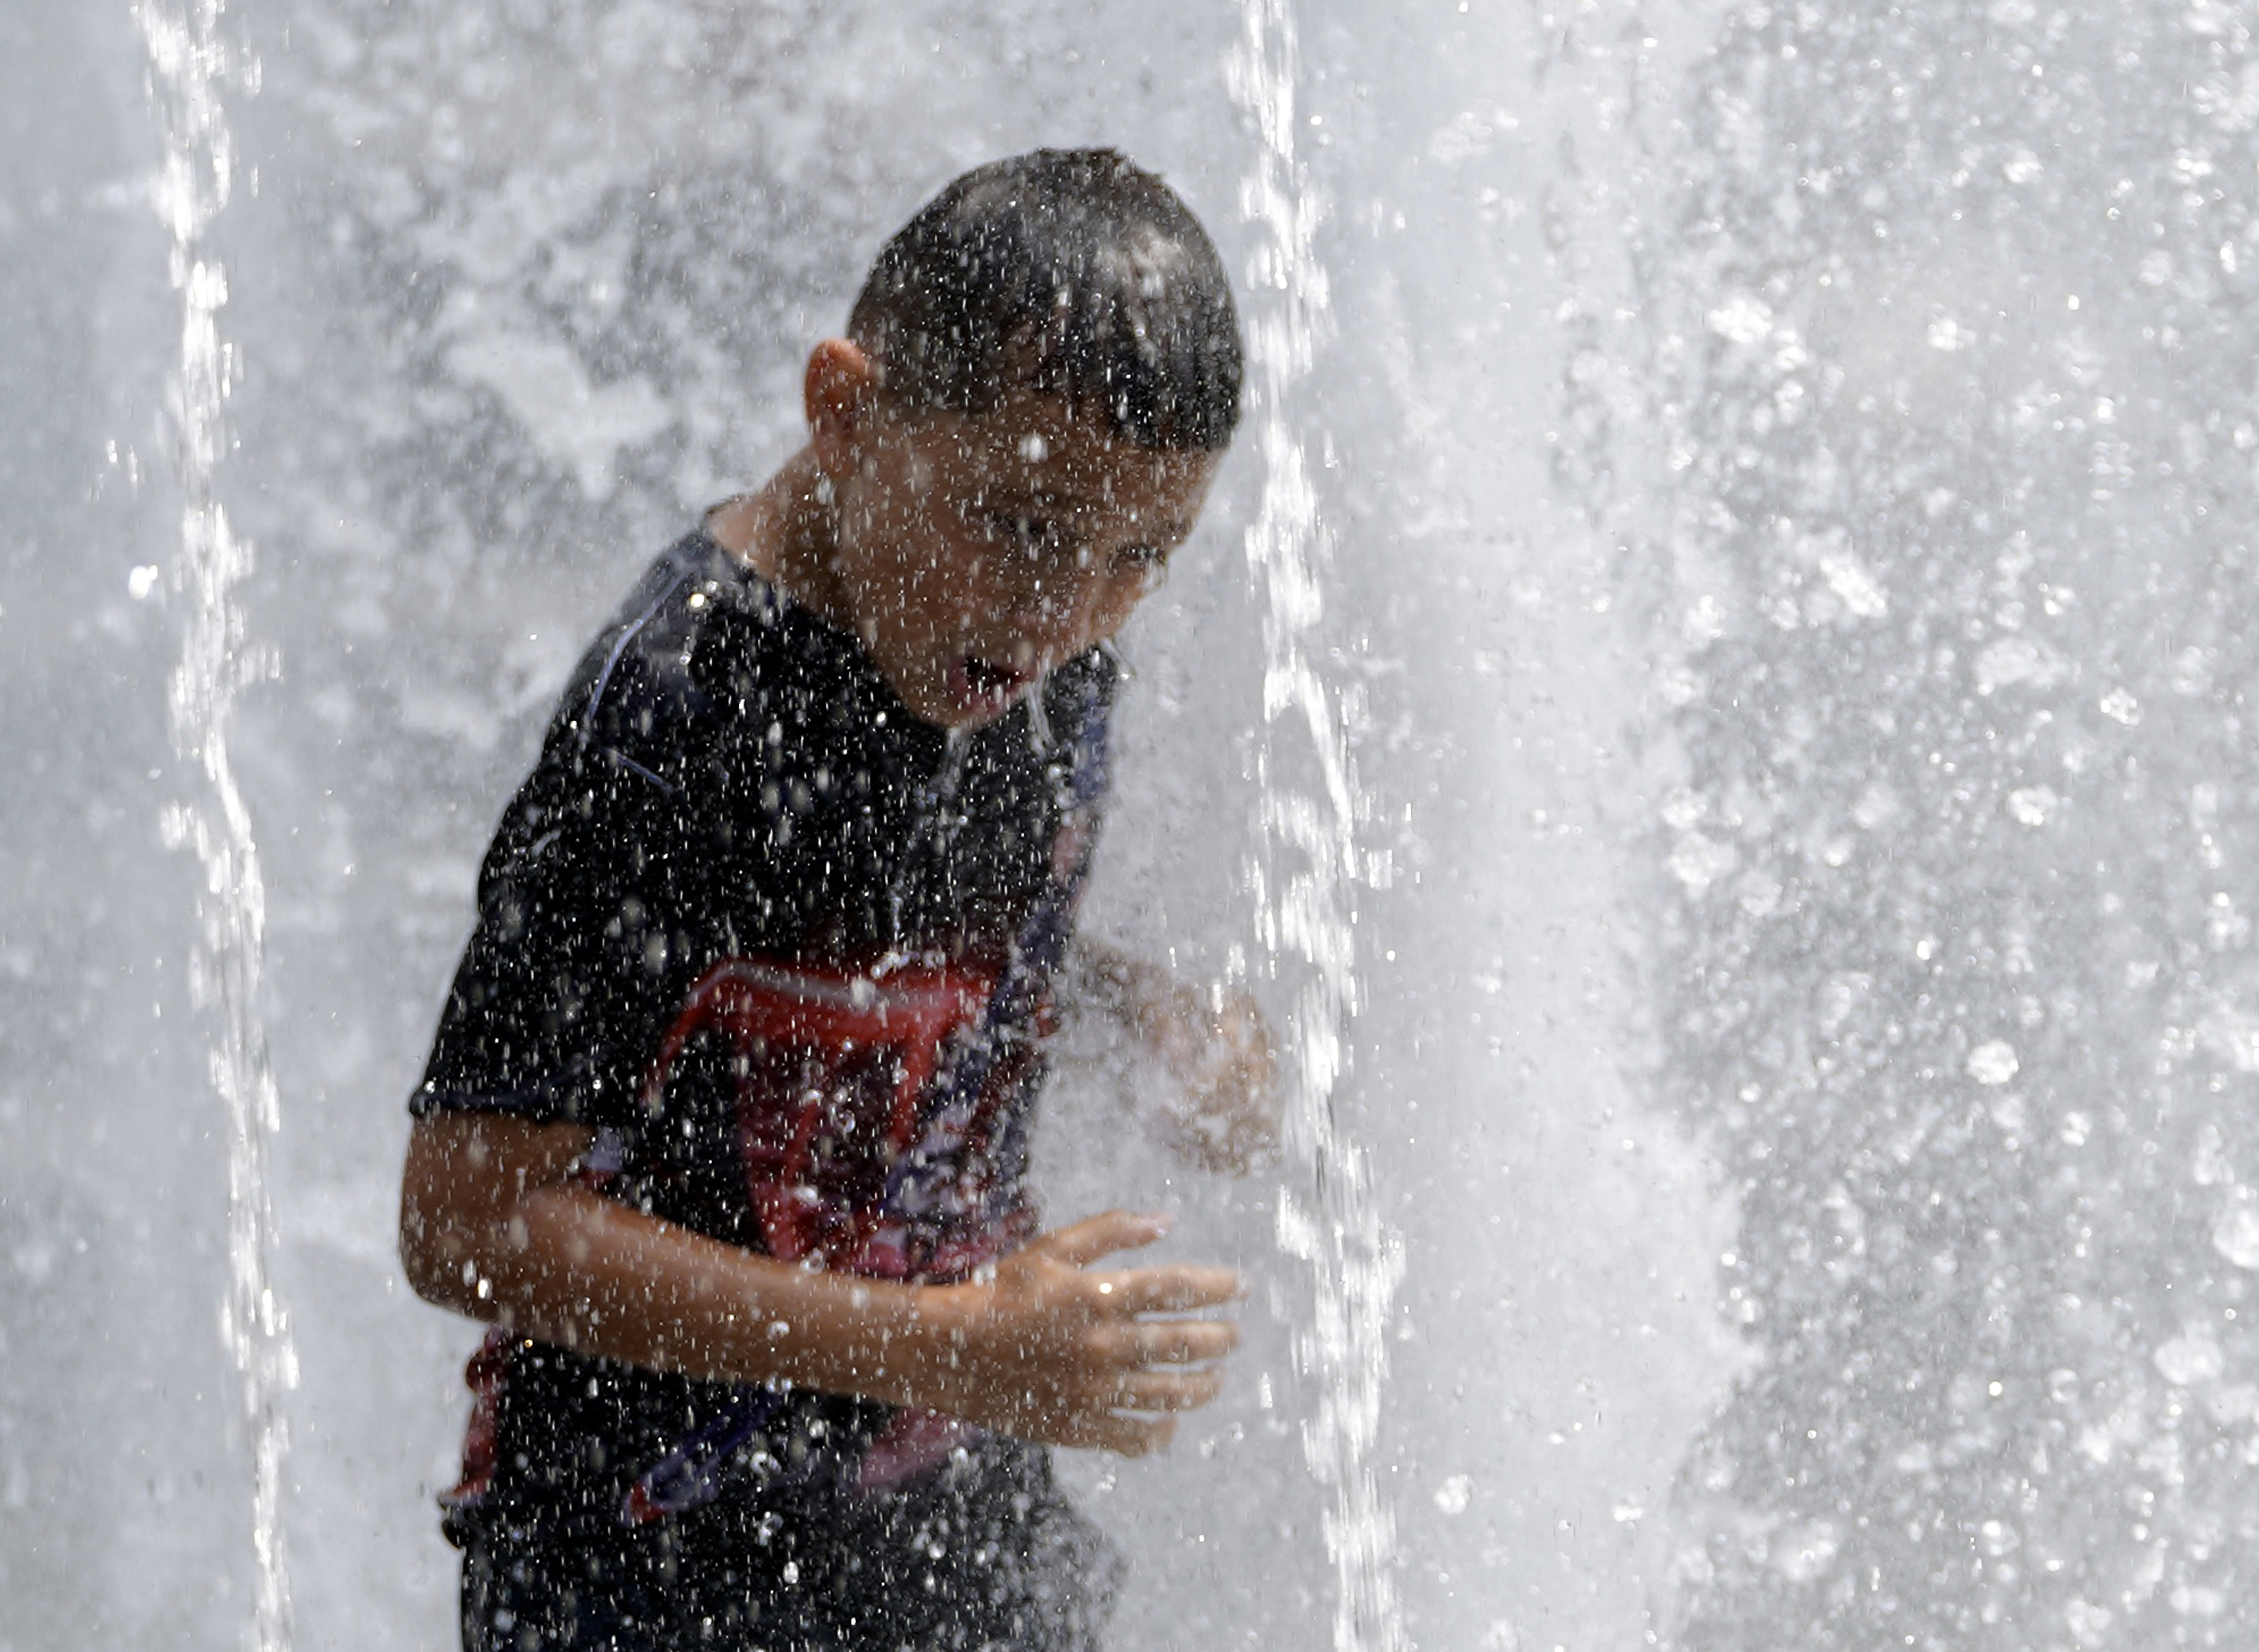 Un niño se refresca en una fuente en Washington Square Park en Nueva York. EE. UU. (Foto Prensa Libre: AFP)